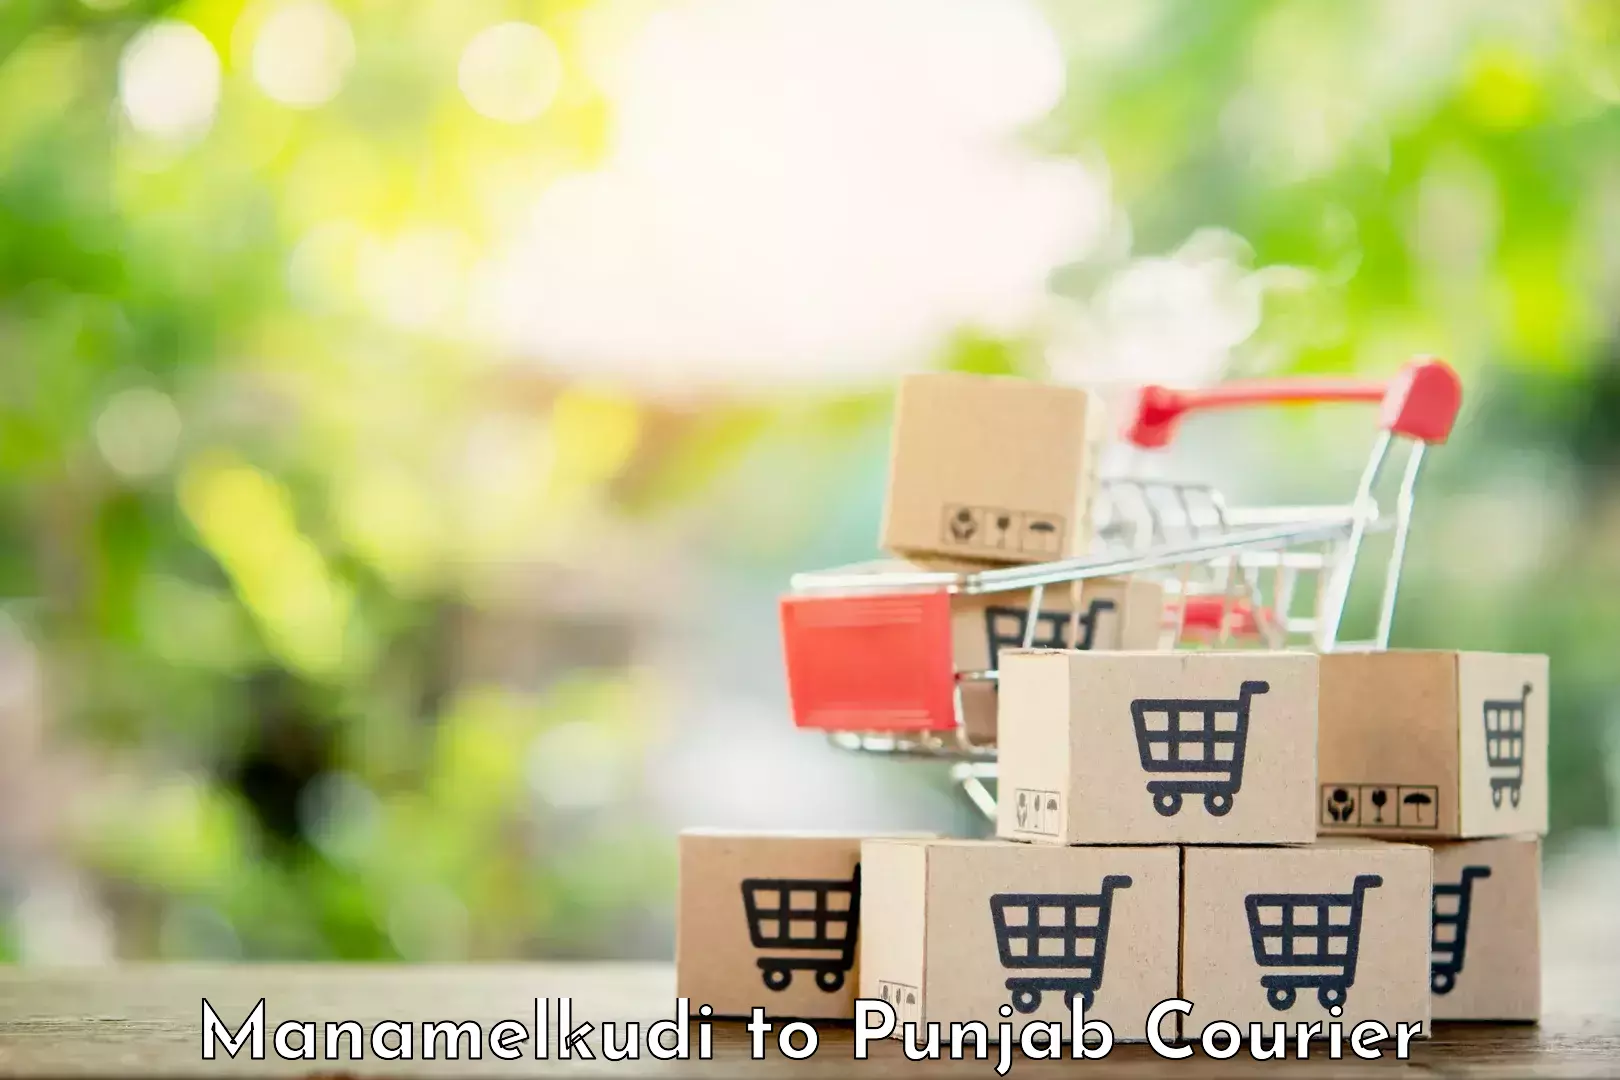 E-commerce logistics support Manamelkudi to Samana